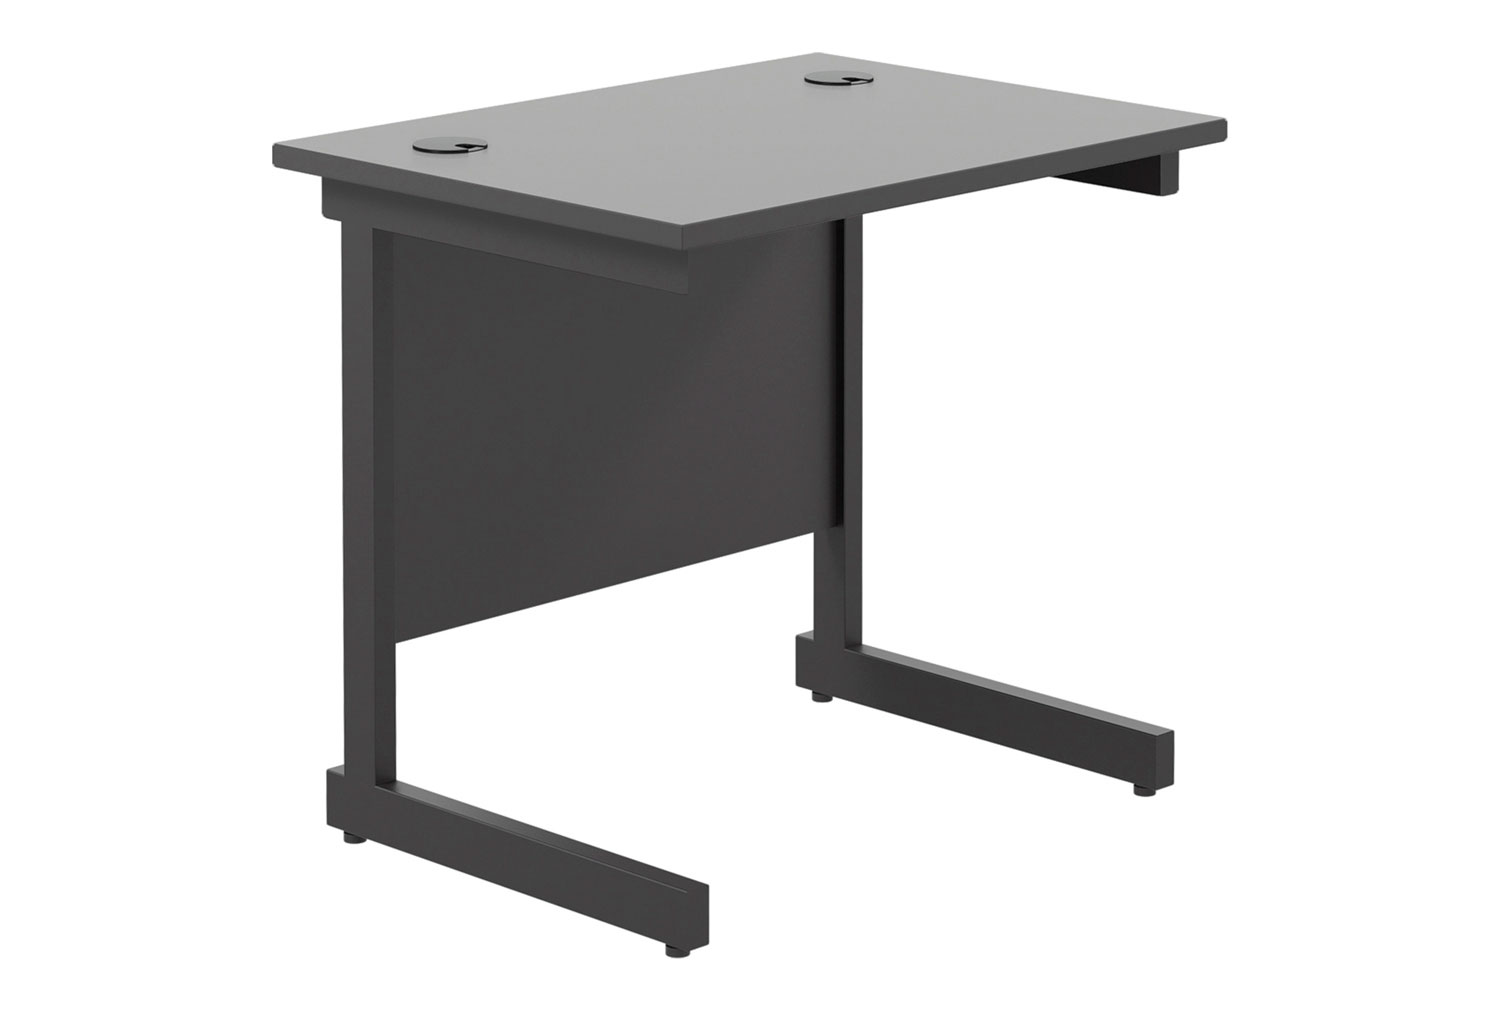 All Black C-Leg Narrow Rectangular Office Desk, 80wx60dx73h (cm), Fully Installed